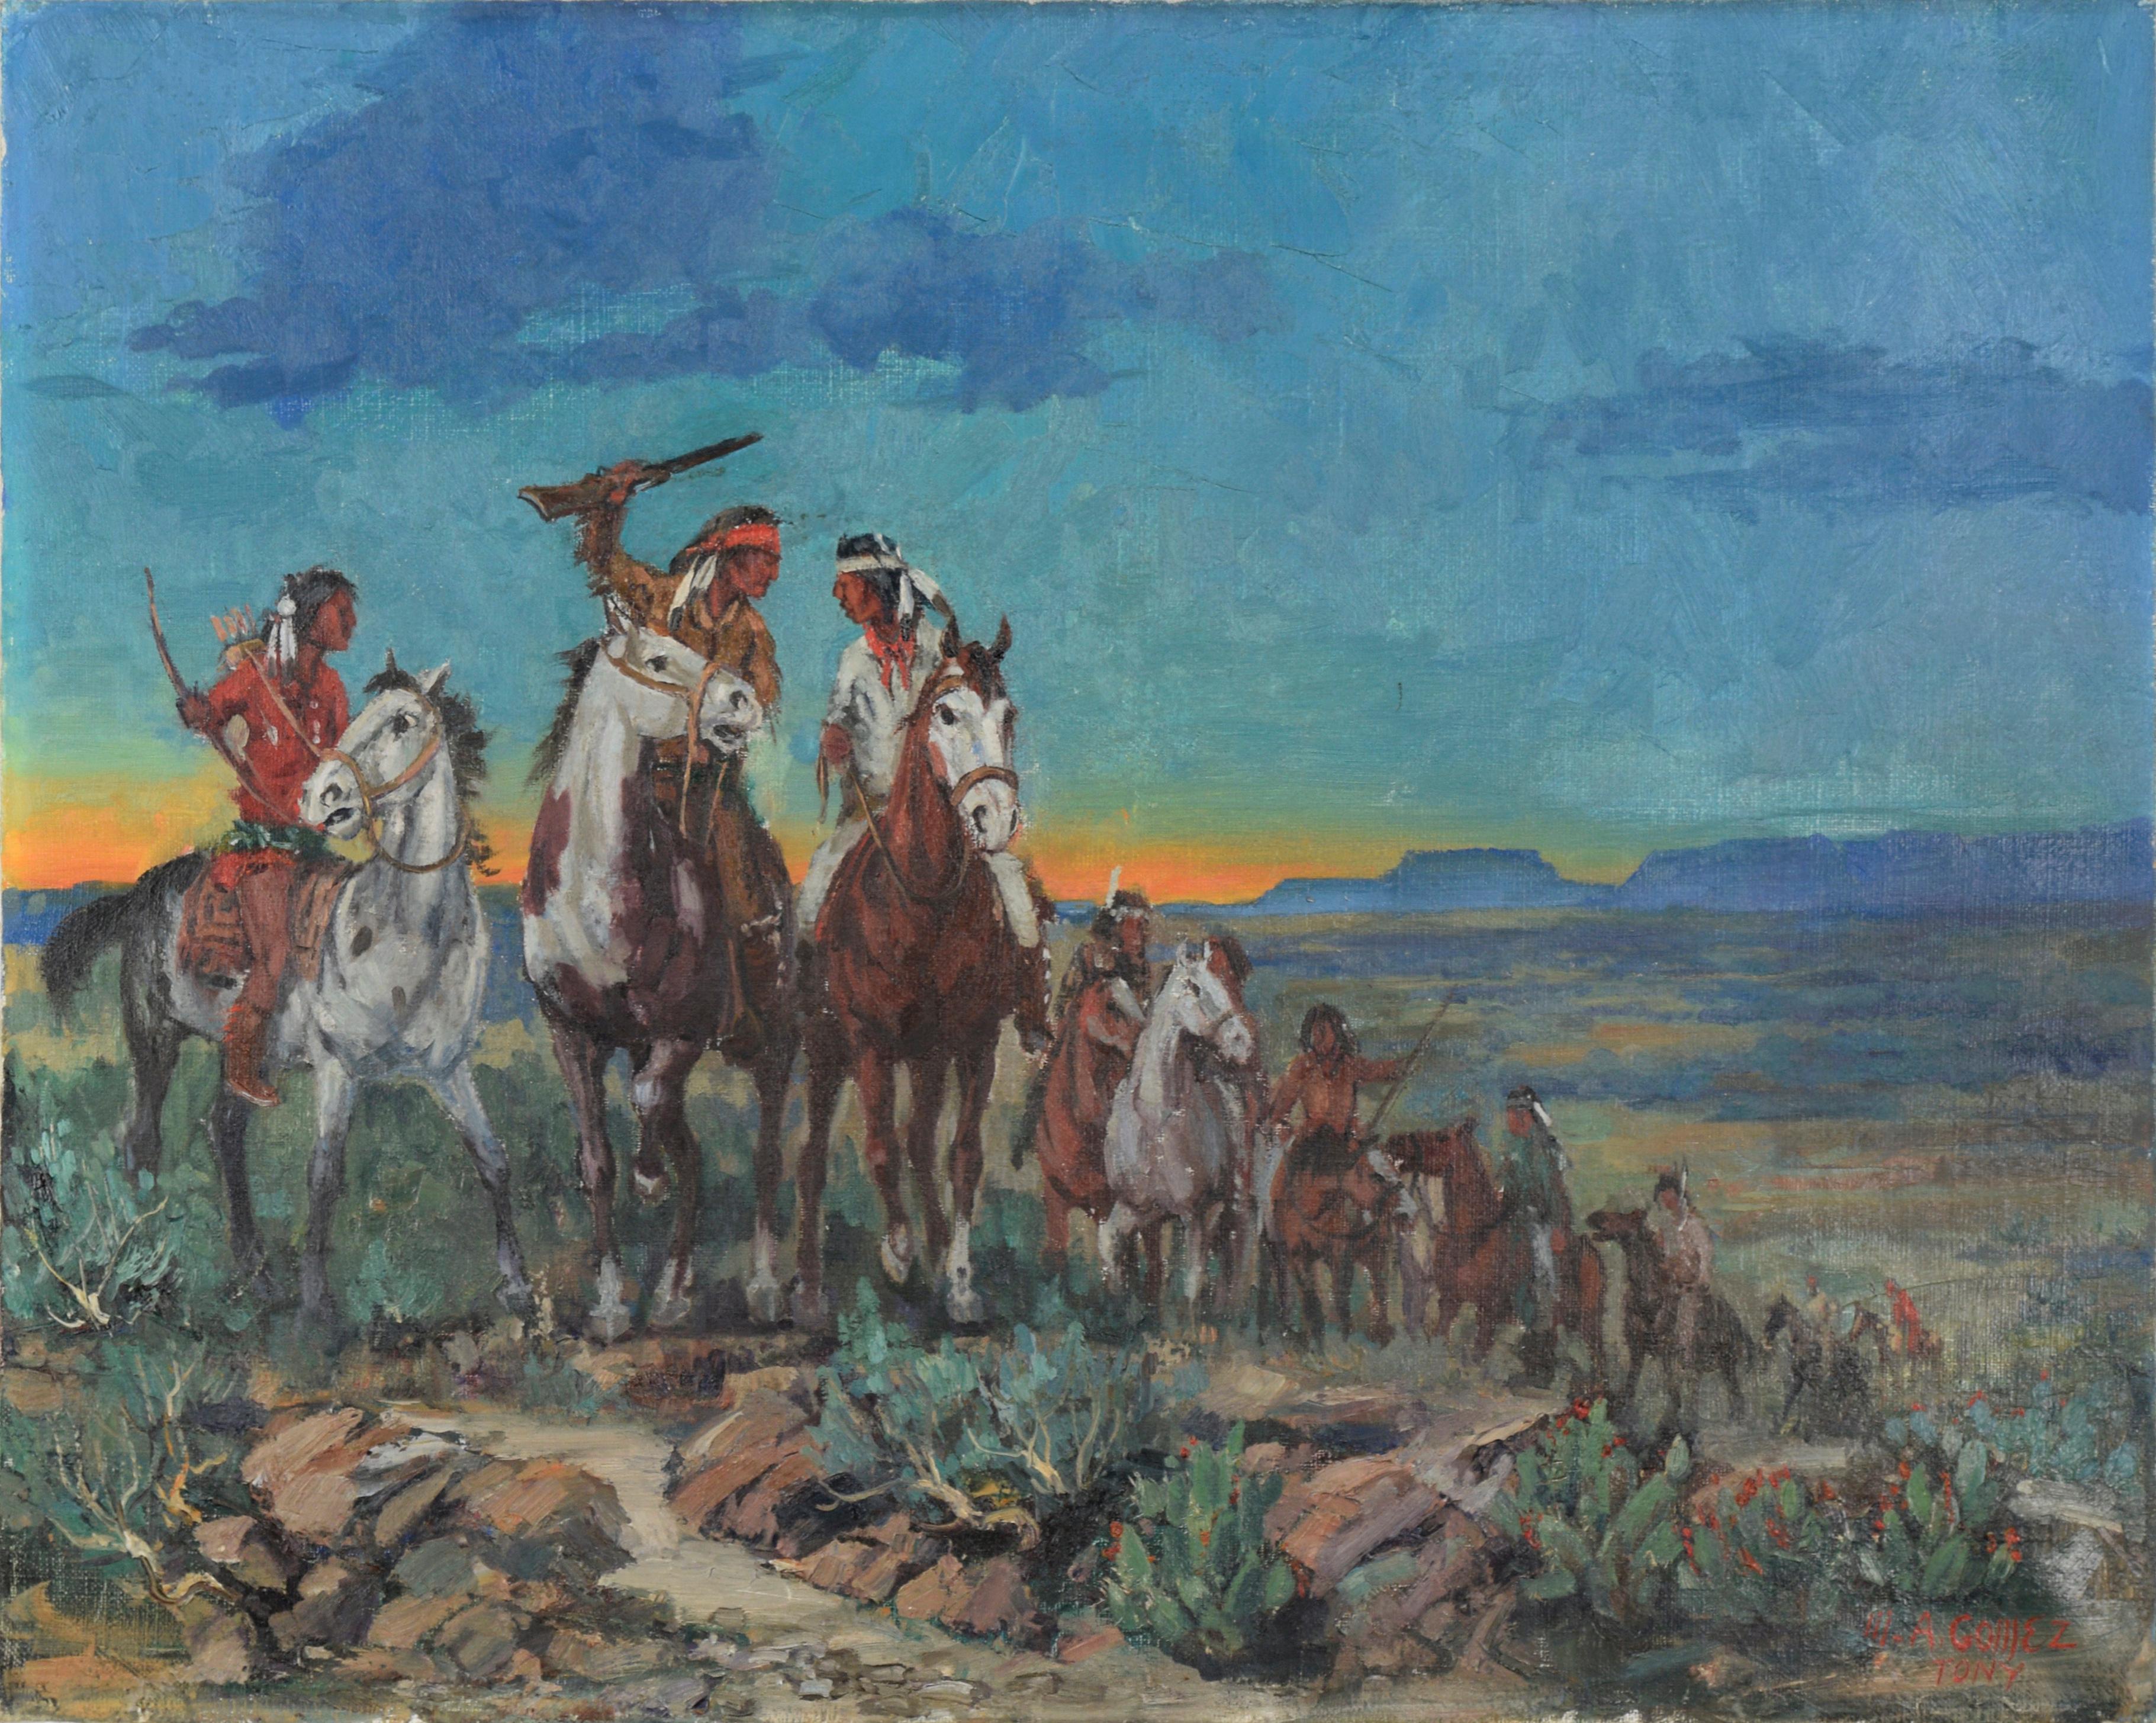 Landscape Painting Marco Antonio Gomez - « Desert Raiders » - Apache Warriors at Sunset (Les rameurs du désert)